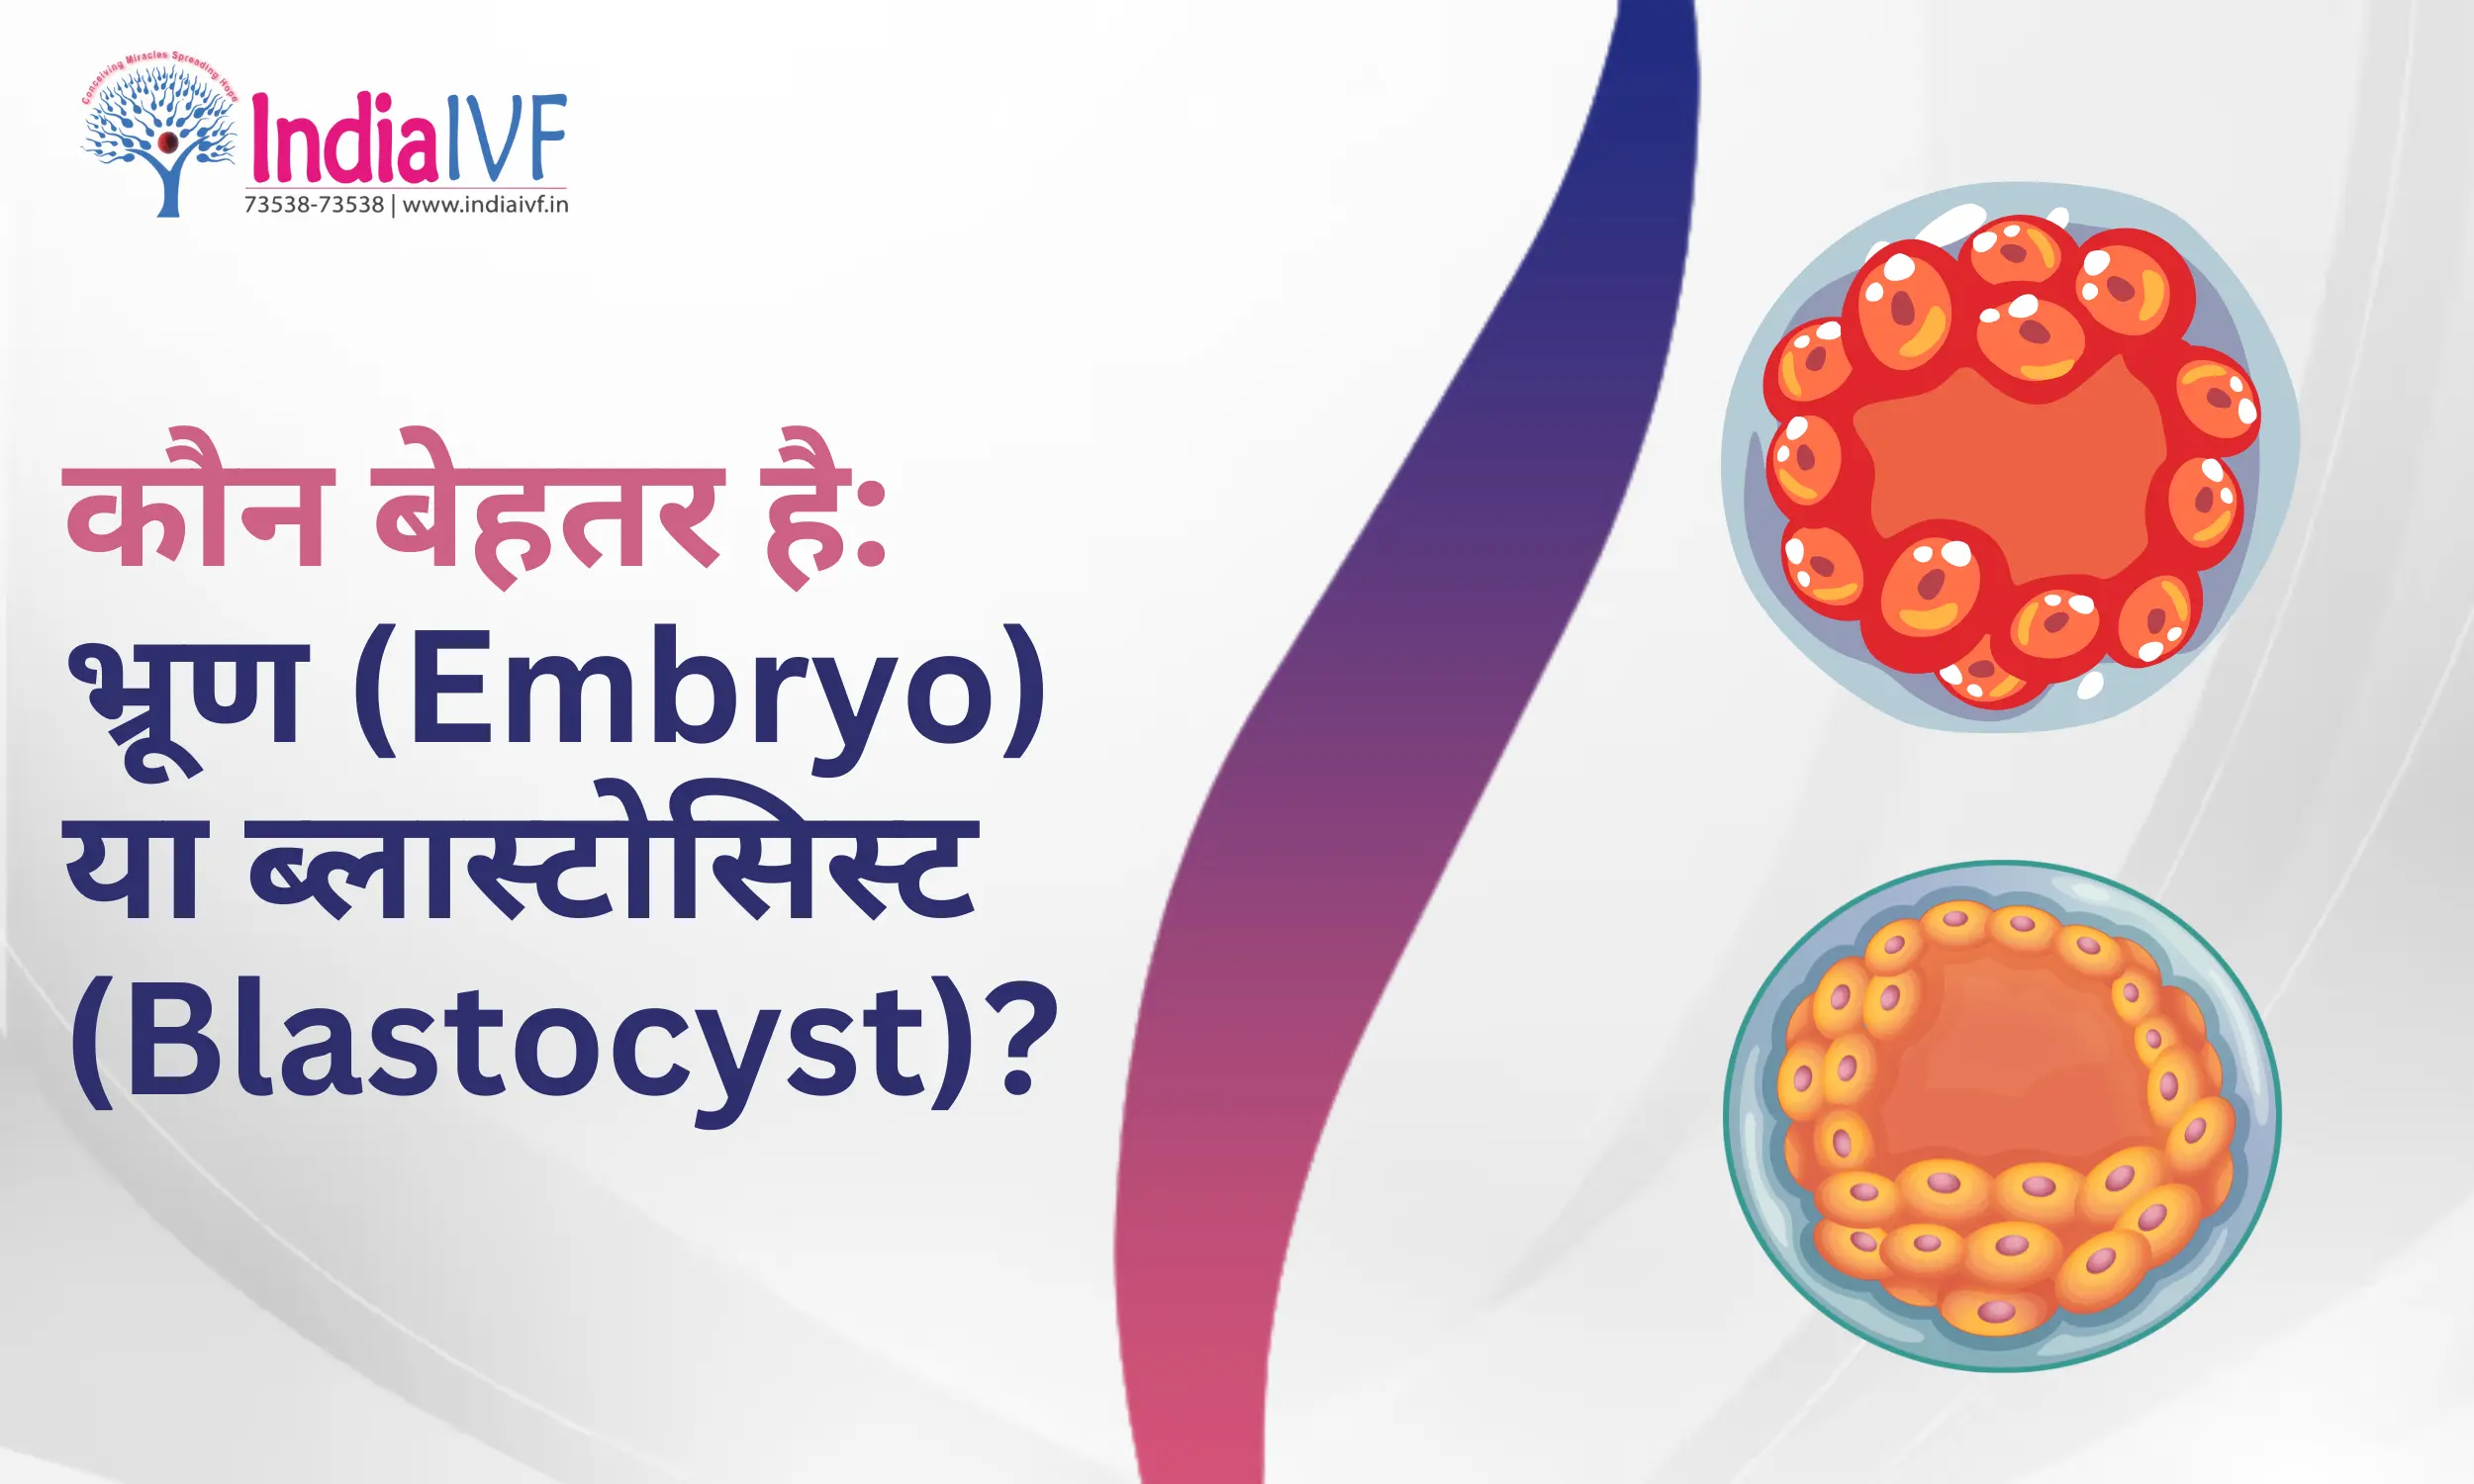 कौन बेहतर है: भ्रूण (Embryo) या ब्लास्टोसिस्ट (Blastocyst)? विशेषज्ञ समीक्षा के साथ IVF सफलता के लिए मार्गदर्शन